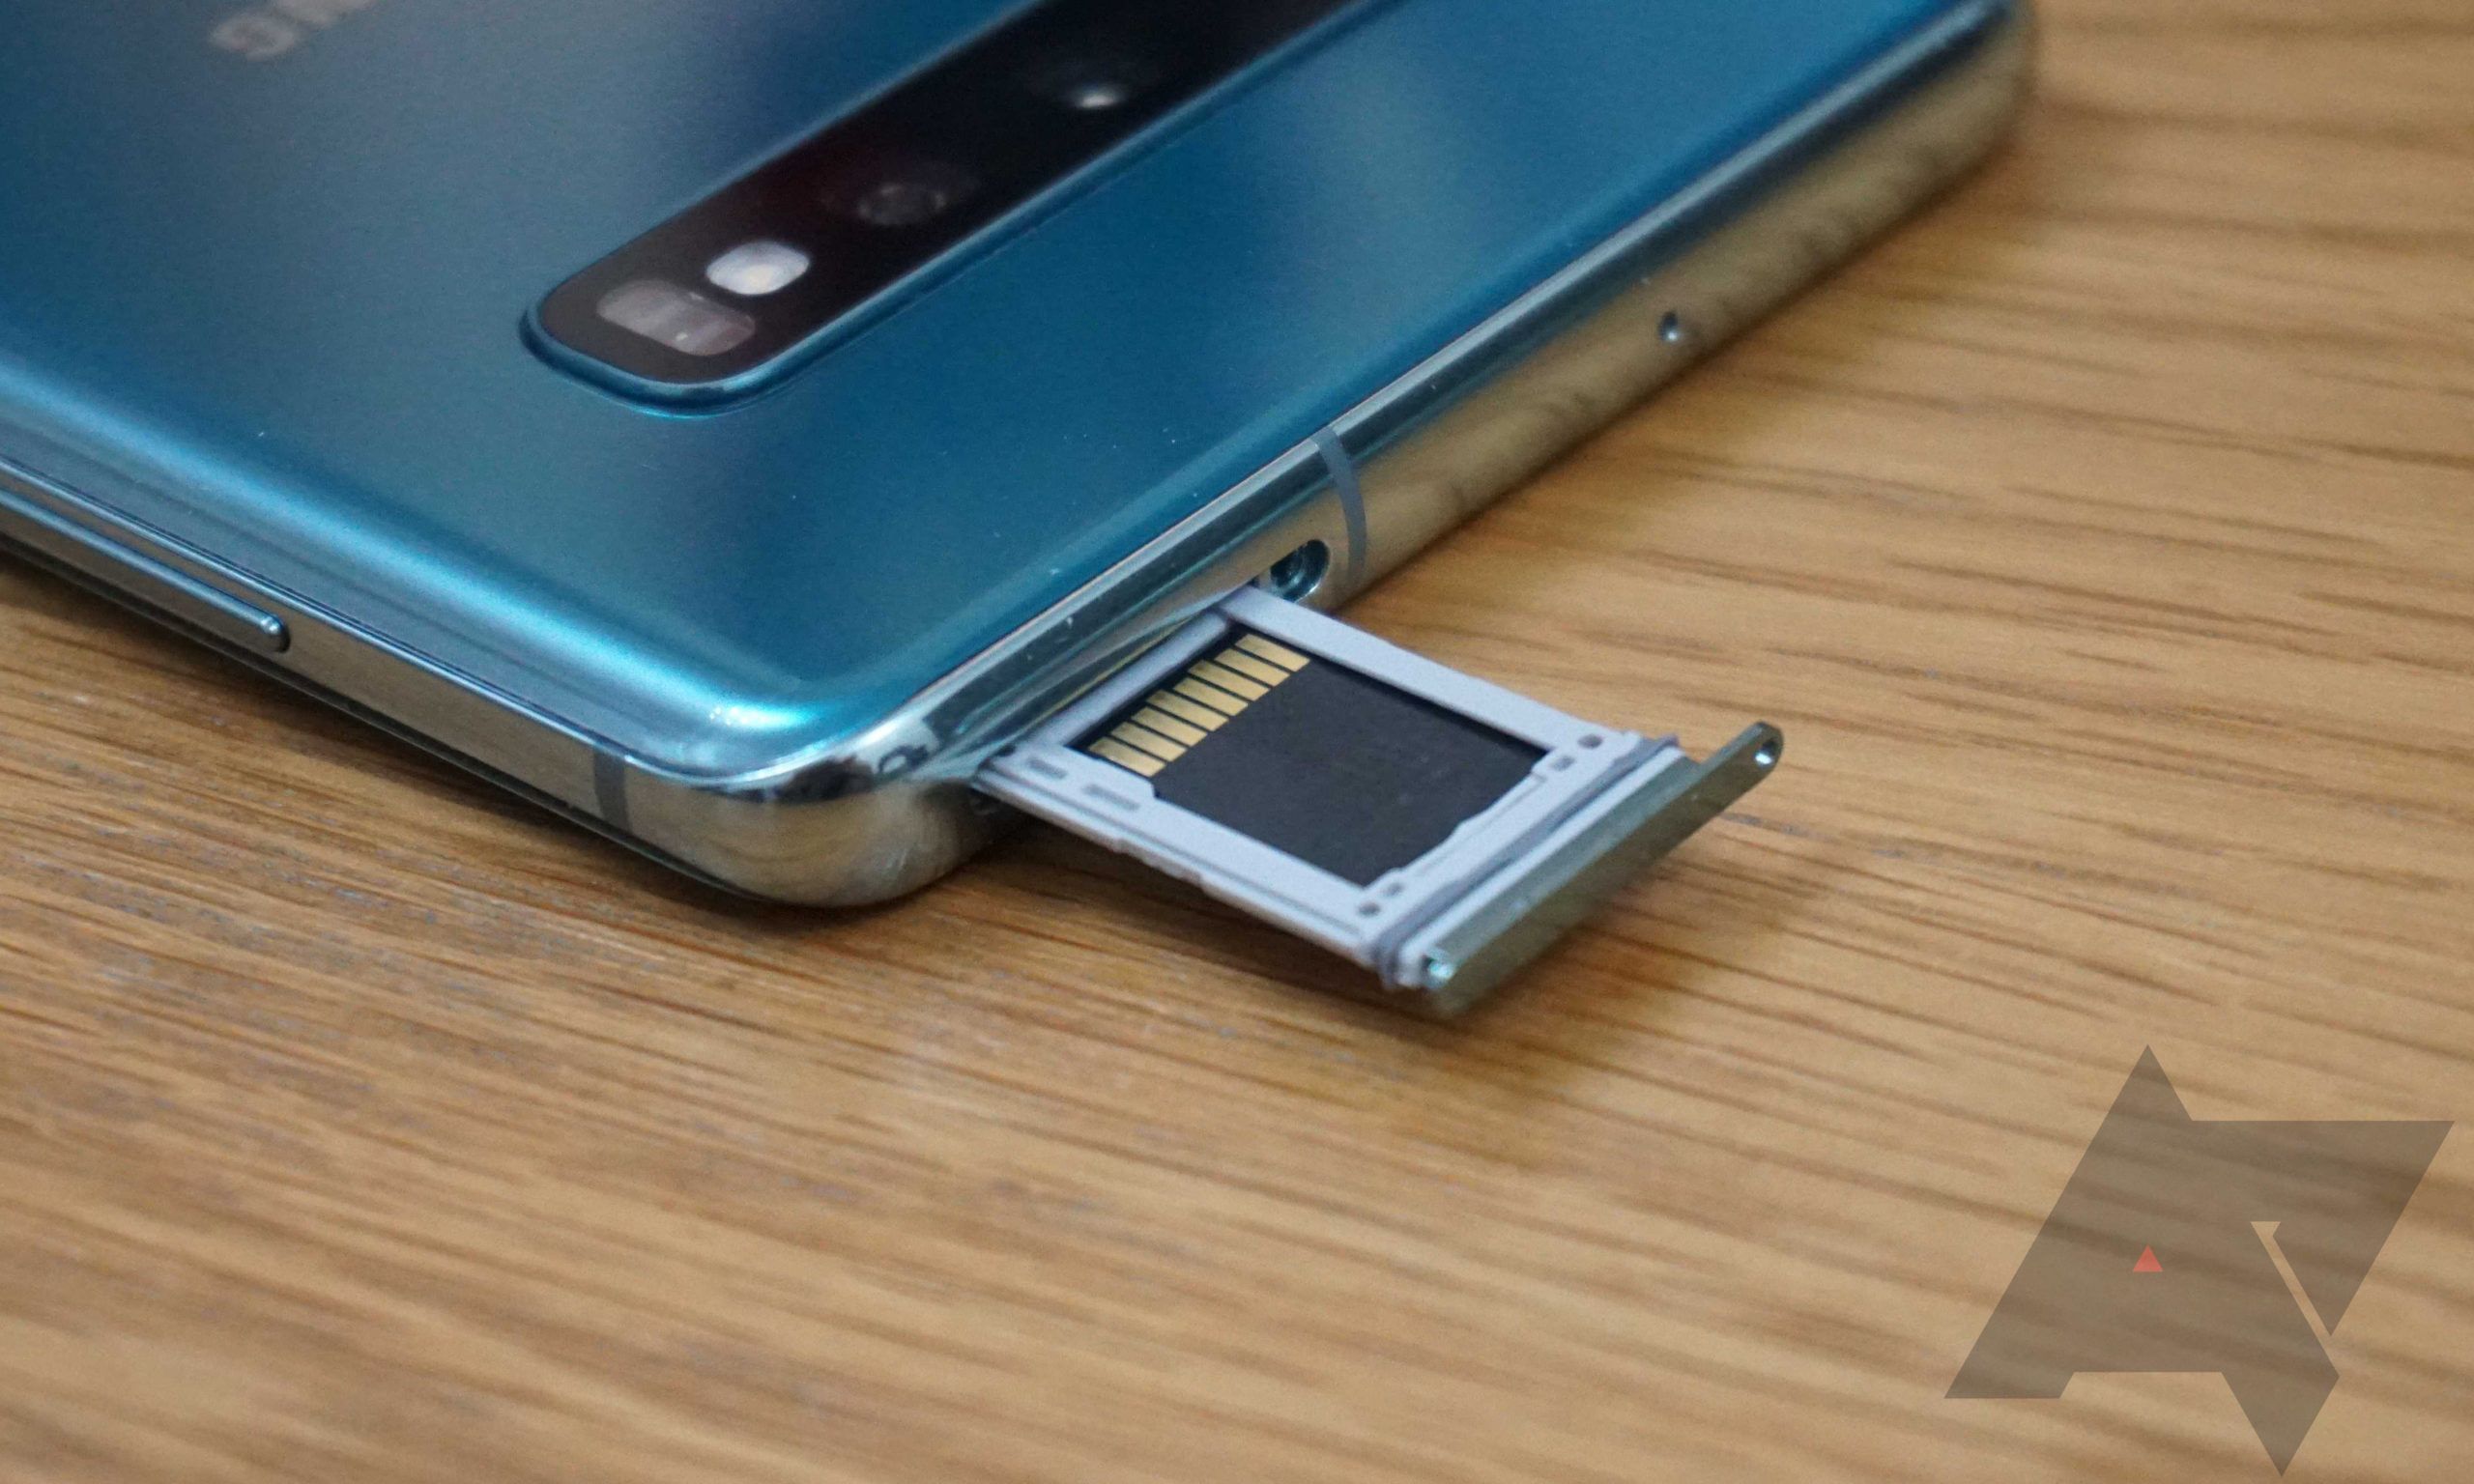 slot de cartão SD estendido no telefone Android